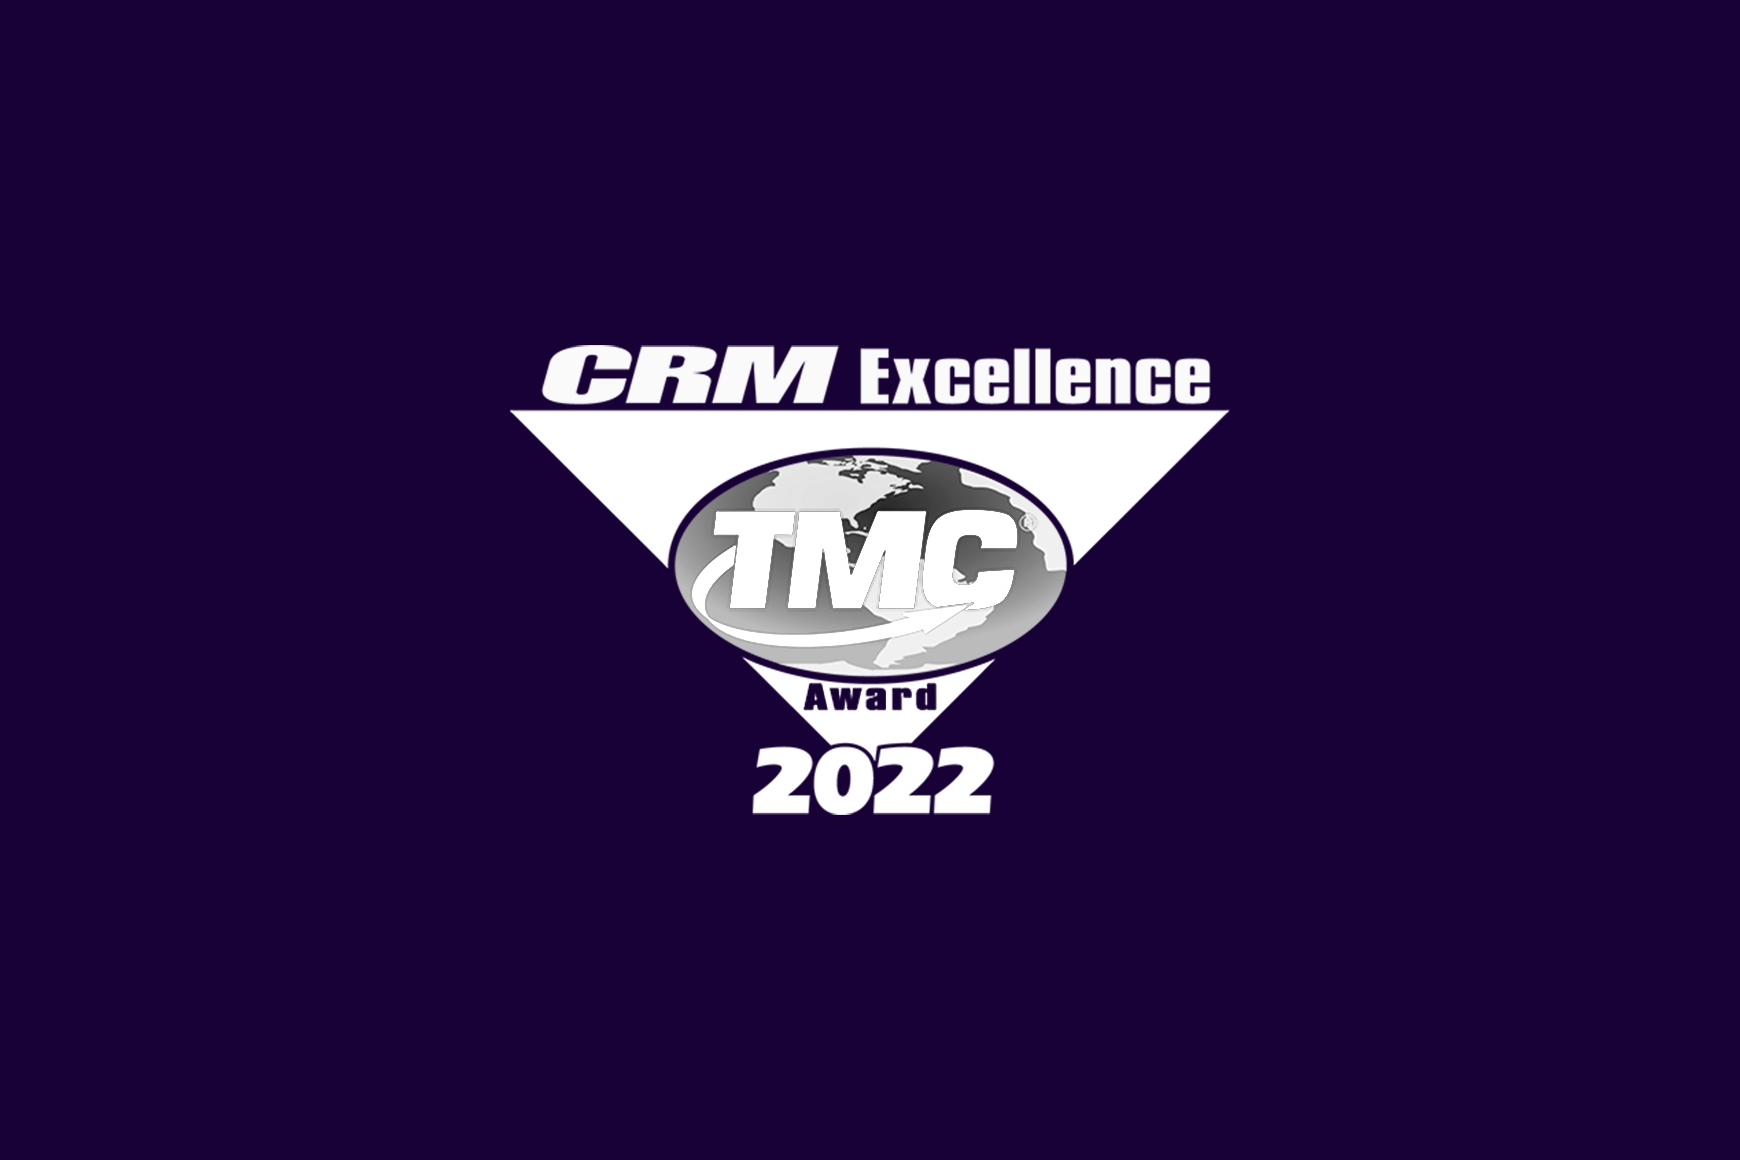 2022 CRM Excellence Award